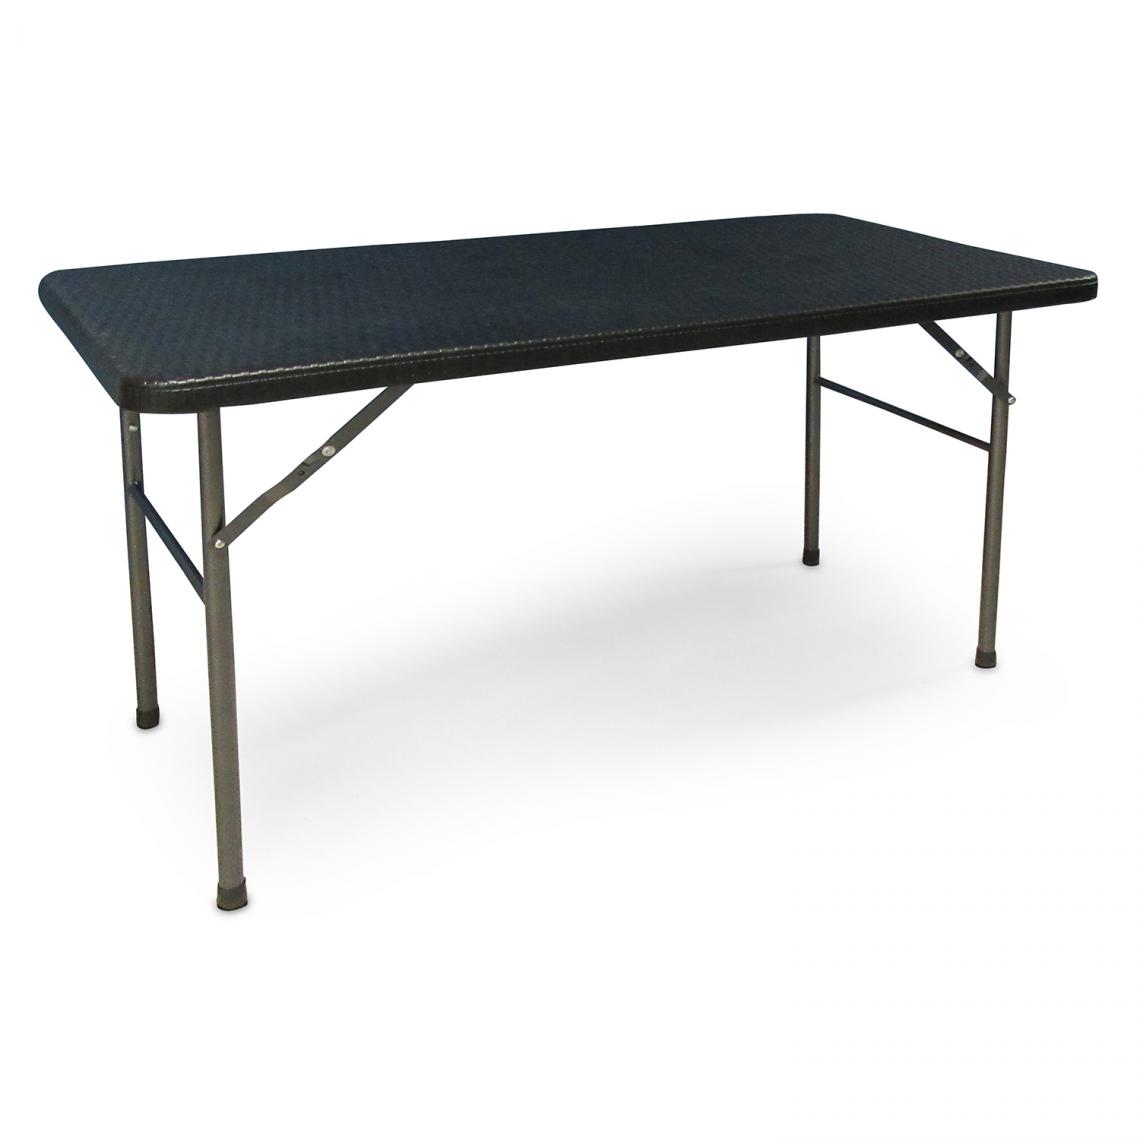 Alter - Table rectangulaire pliable, coloris noir, 60 x 120 x h74 cm - Tables à manger